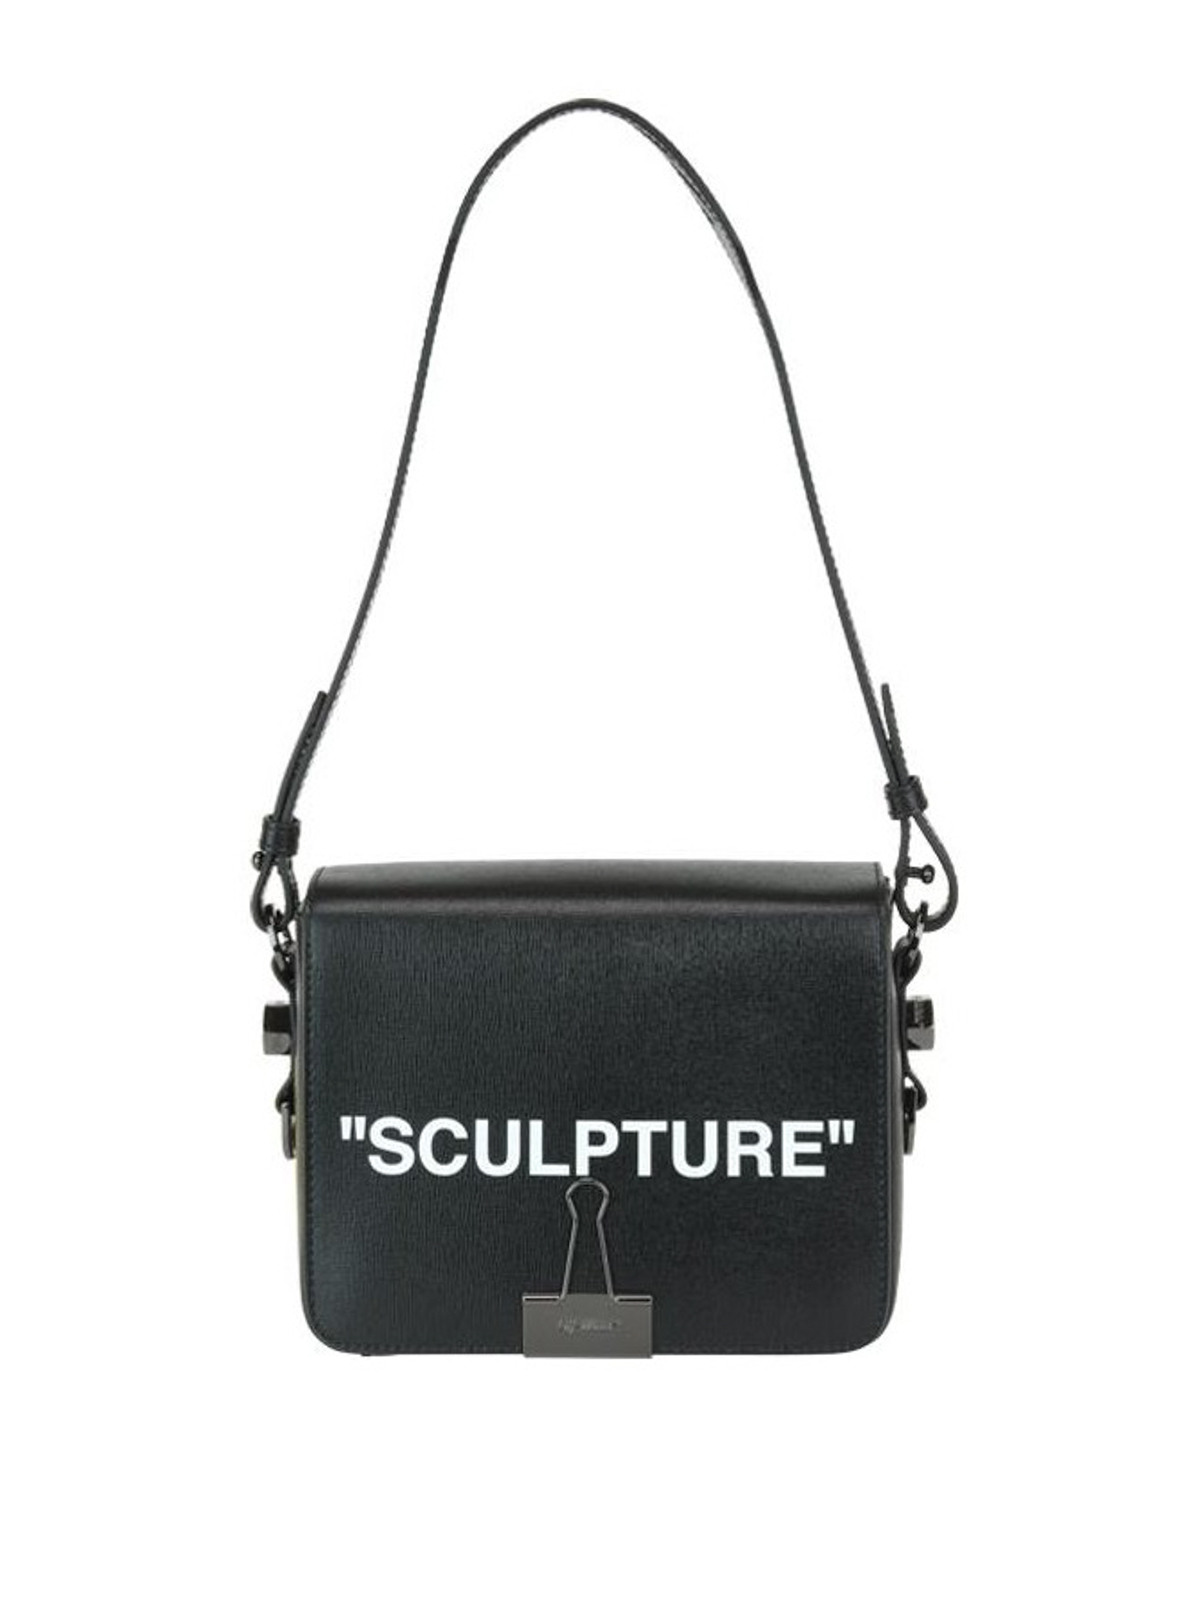 Shoulder bags Off-White - Sculpture black leather squared shoulder bag -  OWNA011E184230721001